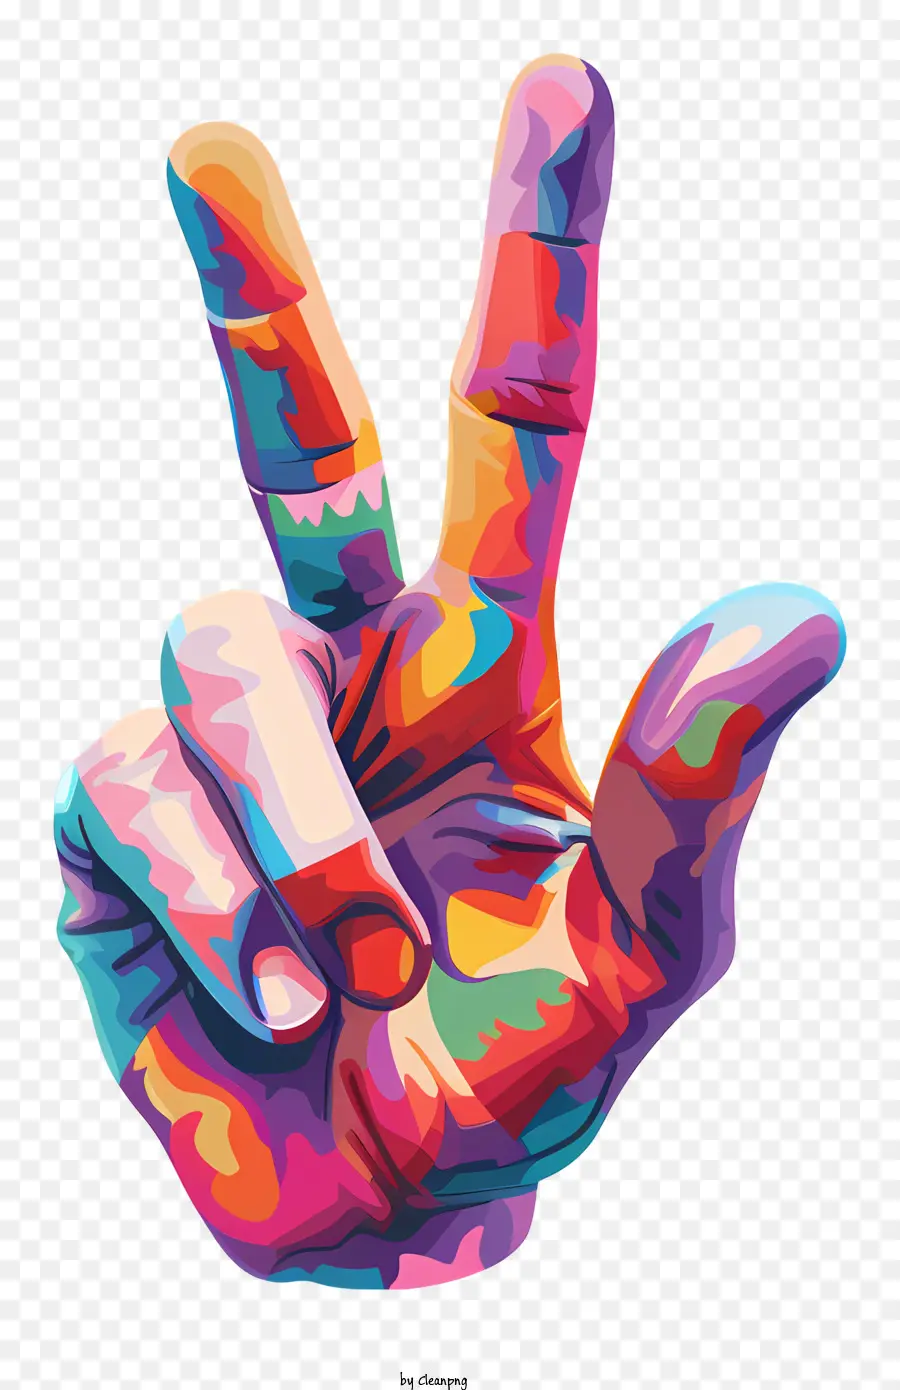 Segno di pace manuale Colori arcobaleno Simbolo gesto della mano - Fare un segno di pace a mano nei colori arcobaleno